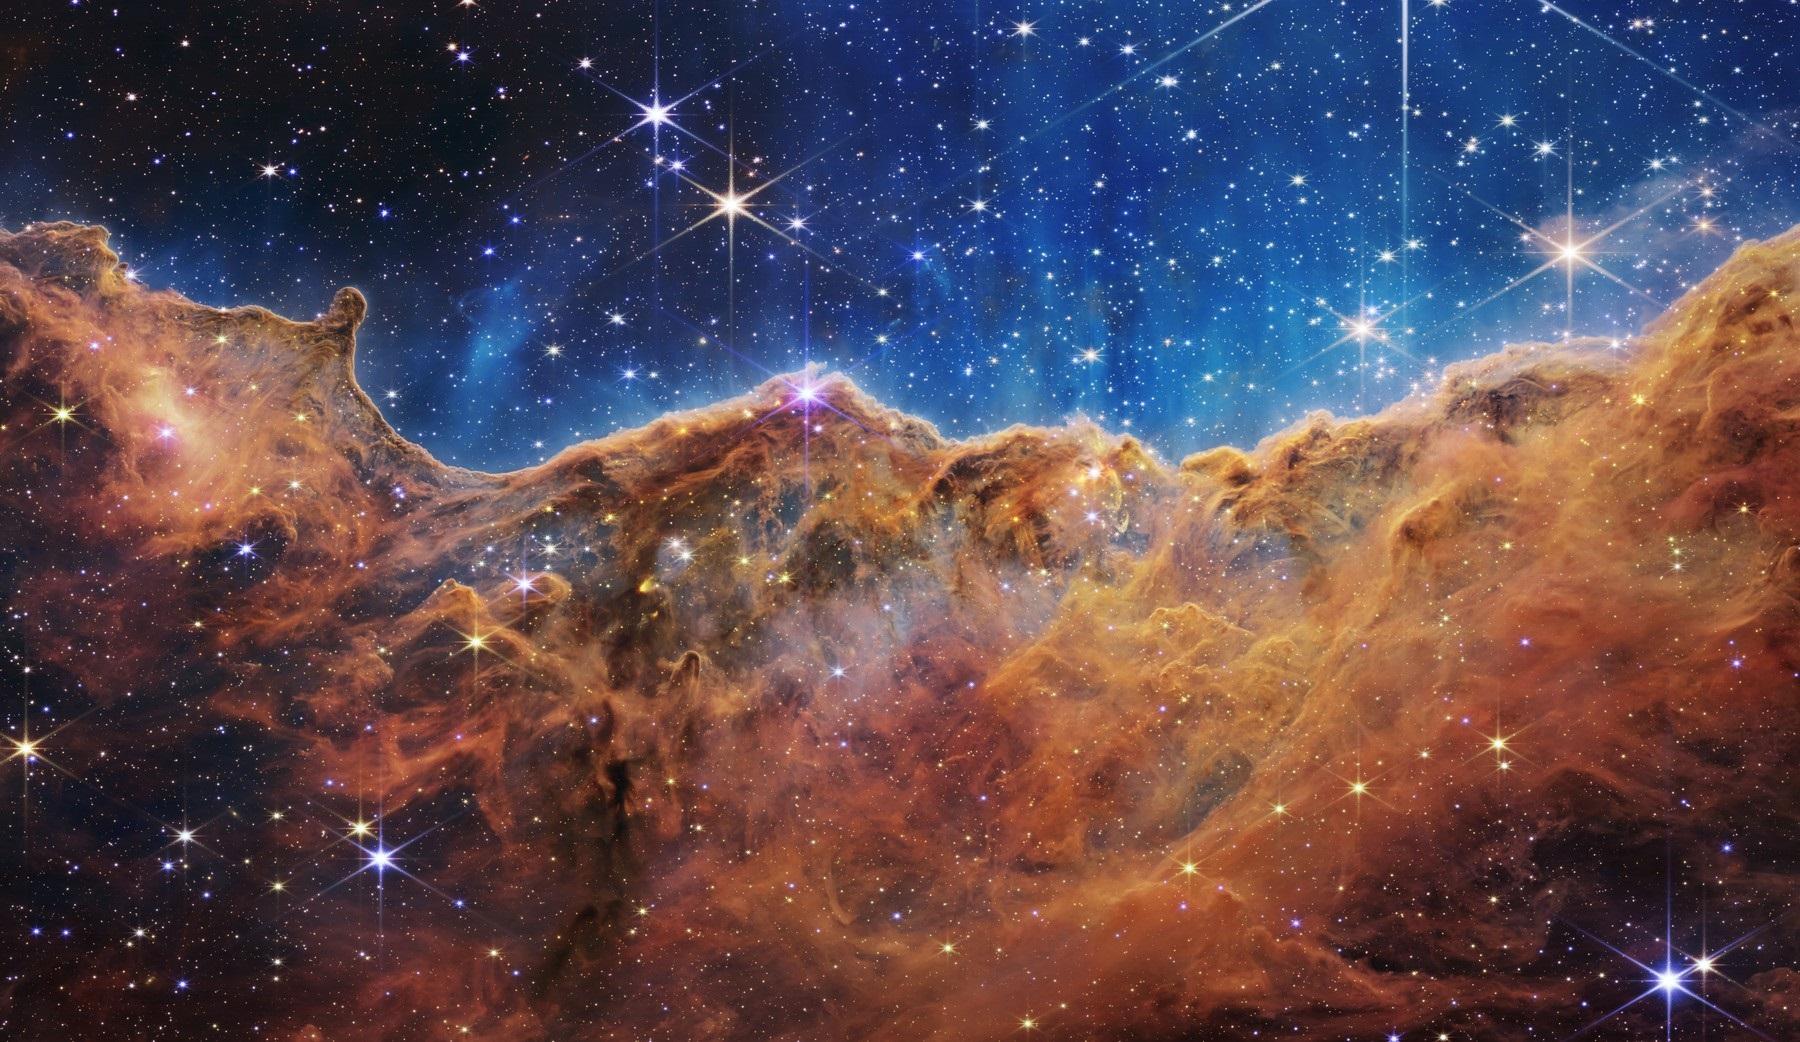 NASA a publicat Imagini uluitoare surprinse de cel mai puternic telescop spaţial, James Webb